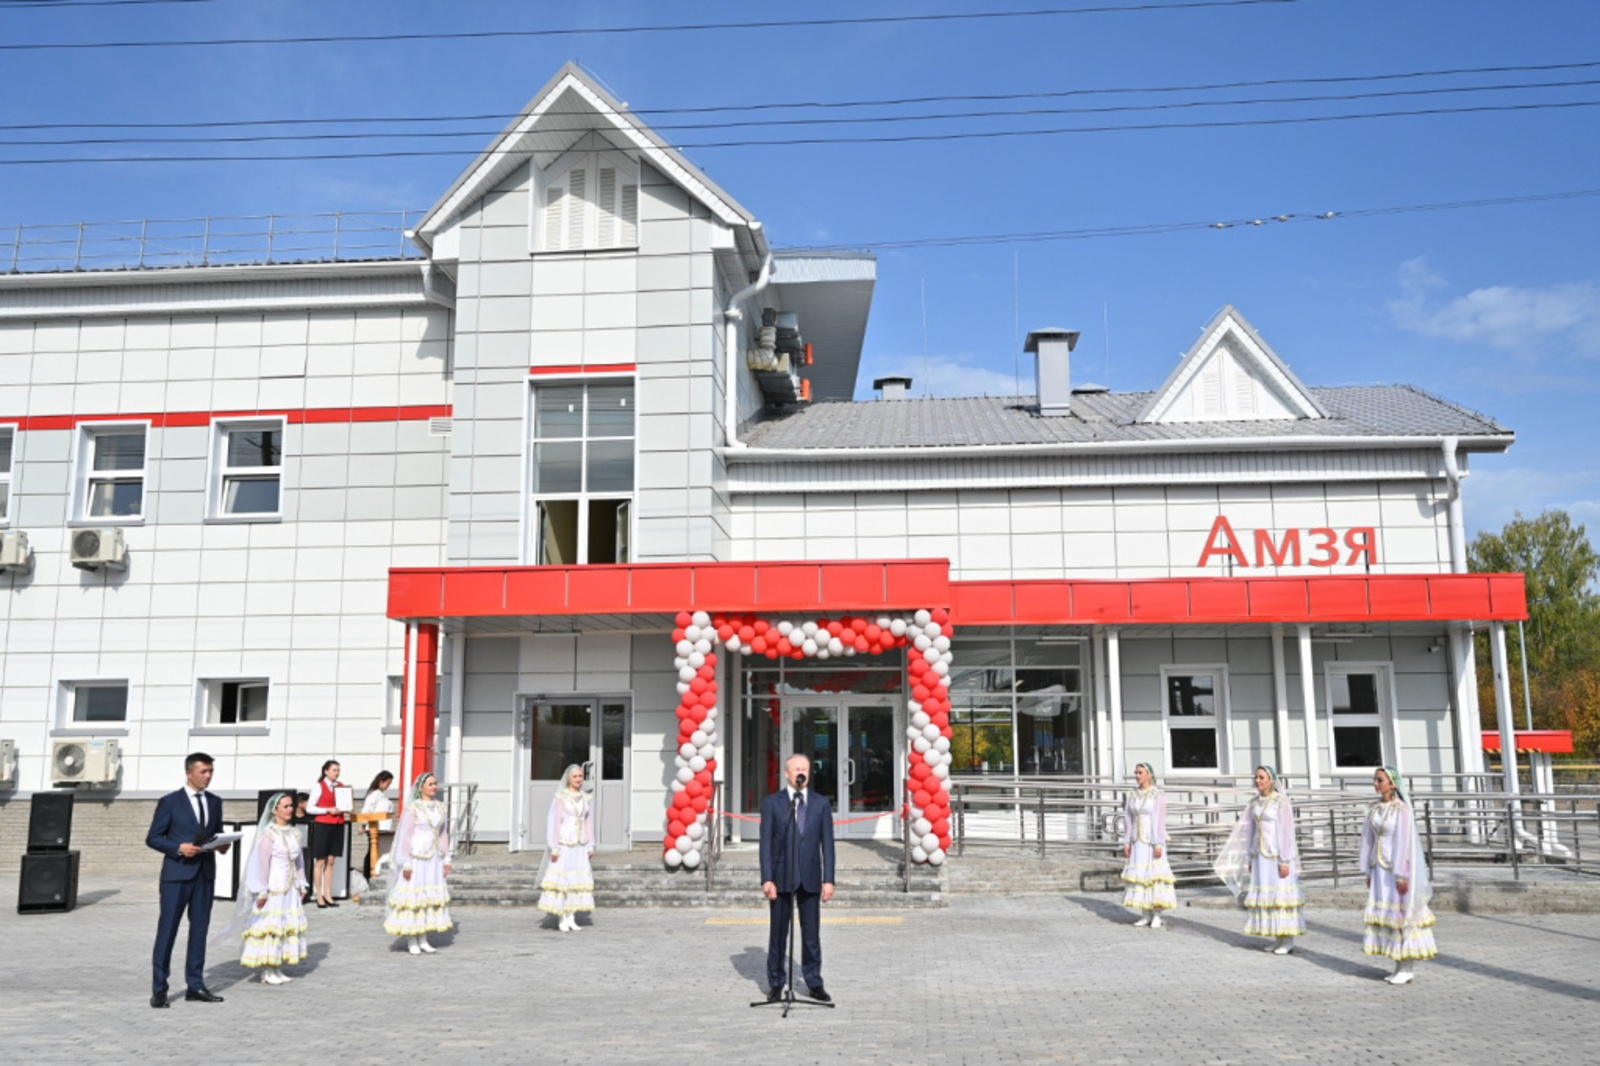 В Башкортостане открылось новое здание вокзального комплекса станции «Амзя»